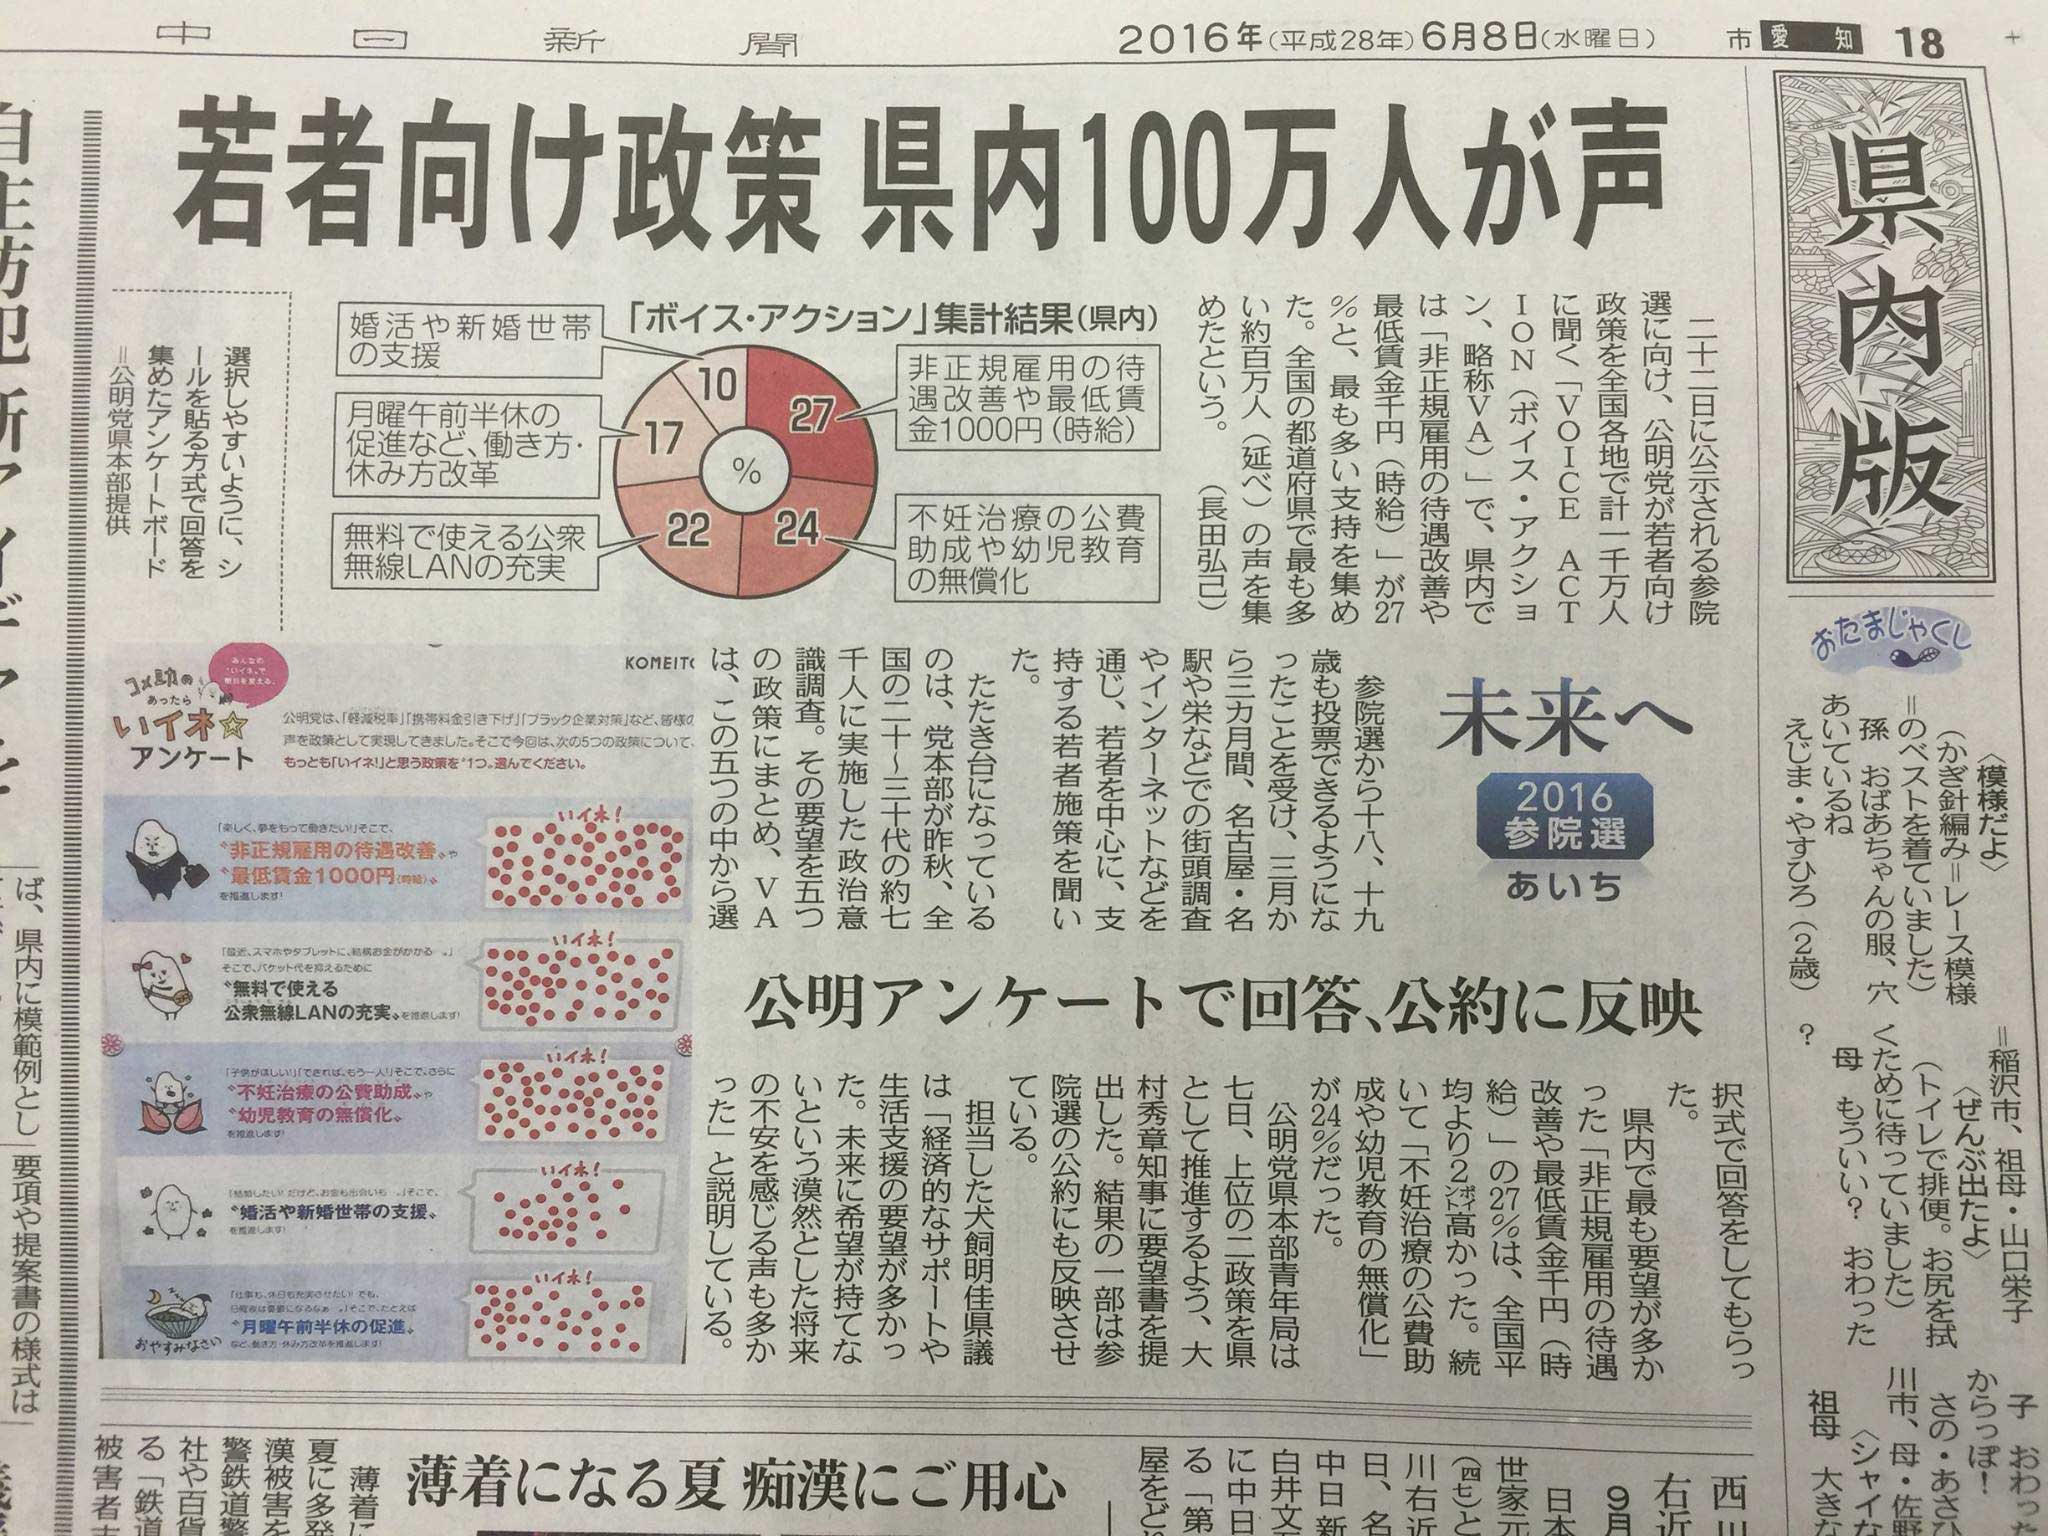 中日新聞に、VOICE ACTION（ボイス・アクション）のアンケート結果が大きく報道